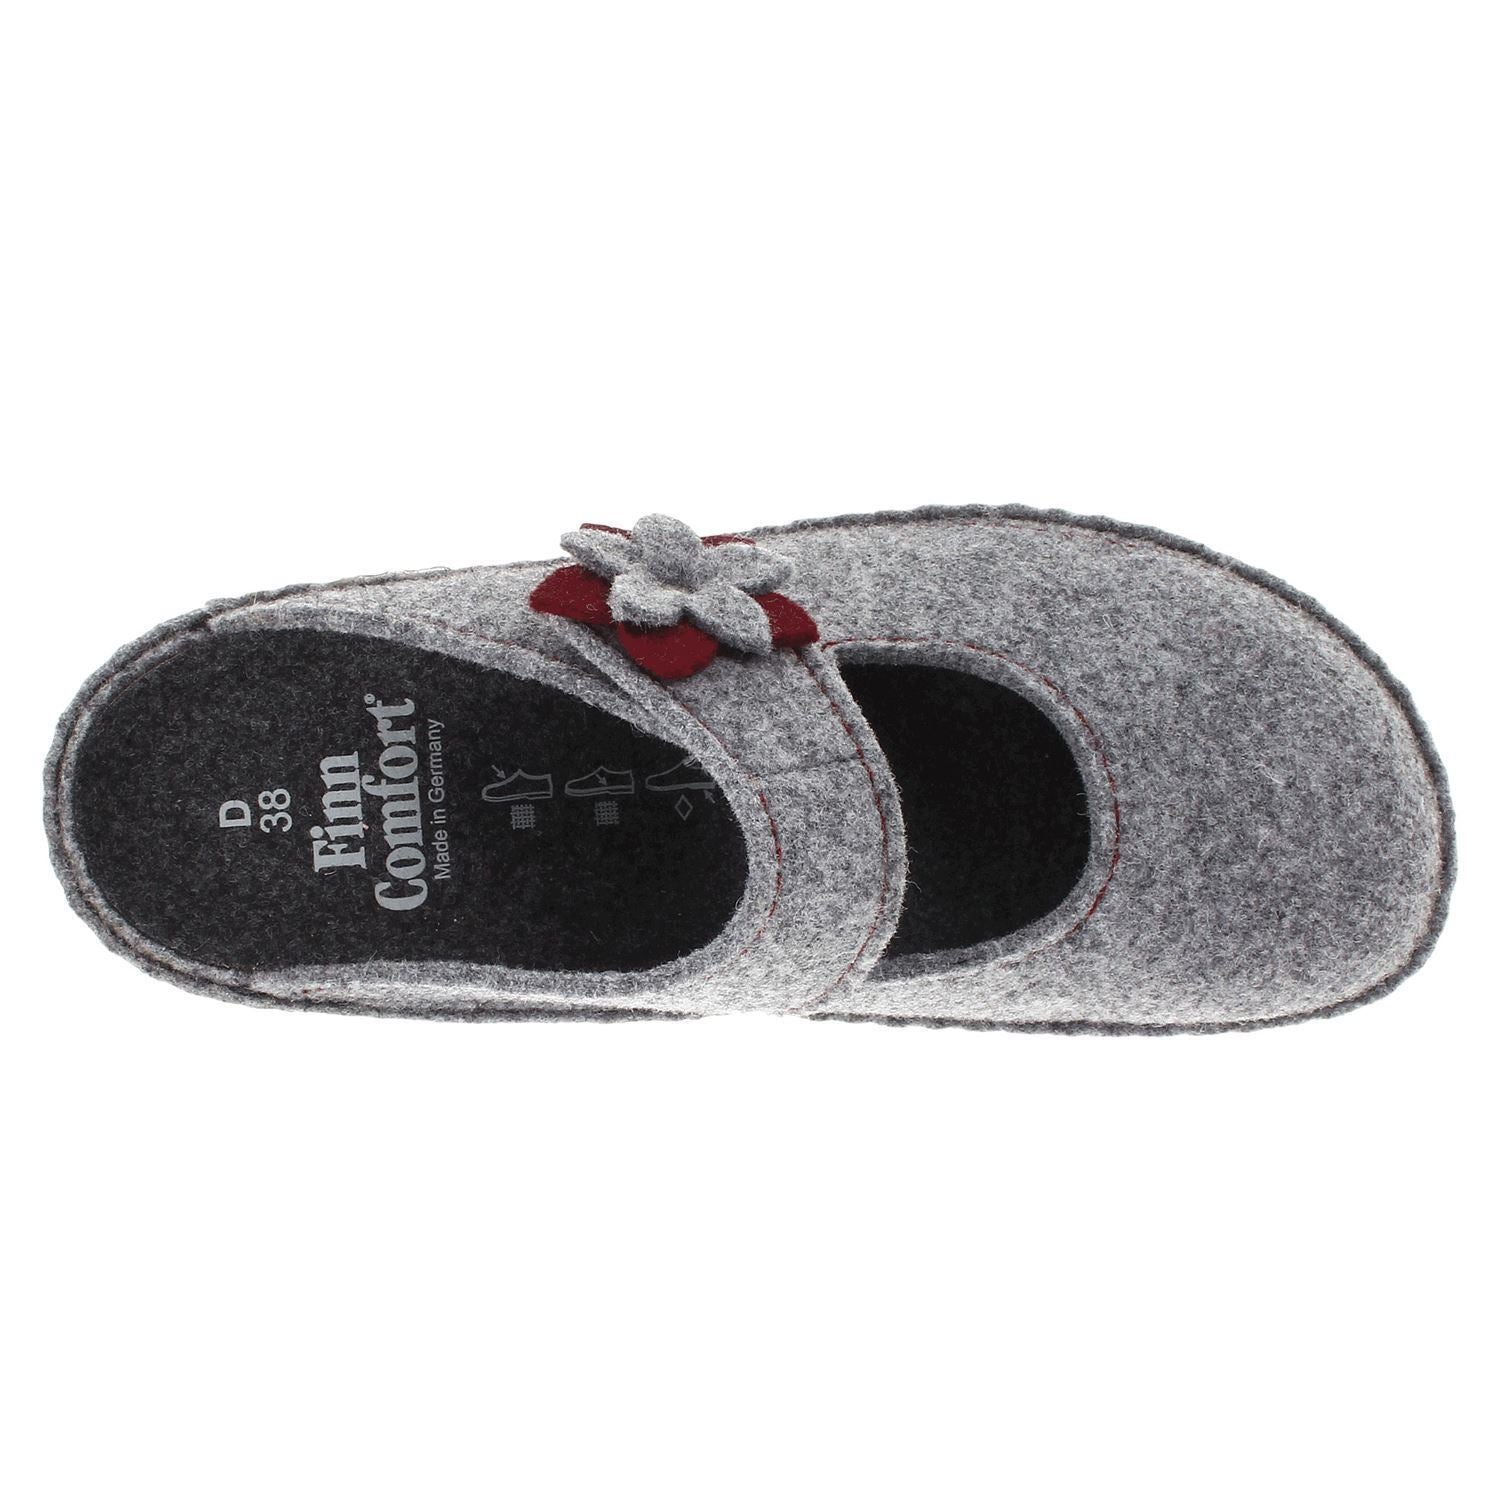 Finn Comfort Arlberg Felt Women's Slip-On Sandals#color_lightgrey cassis bordo